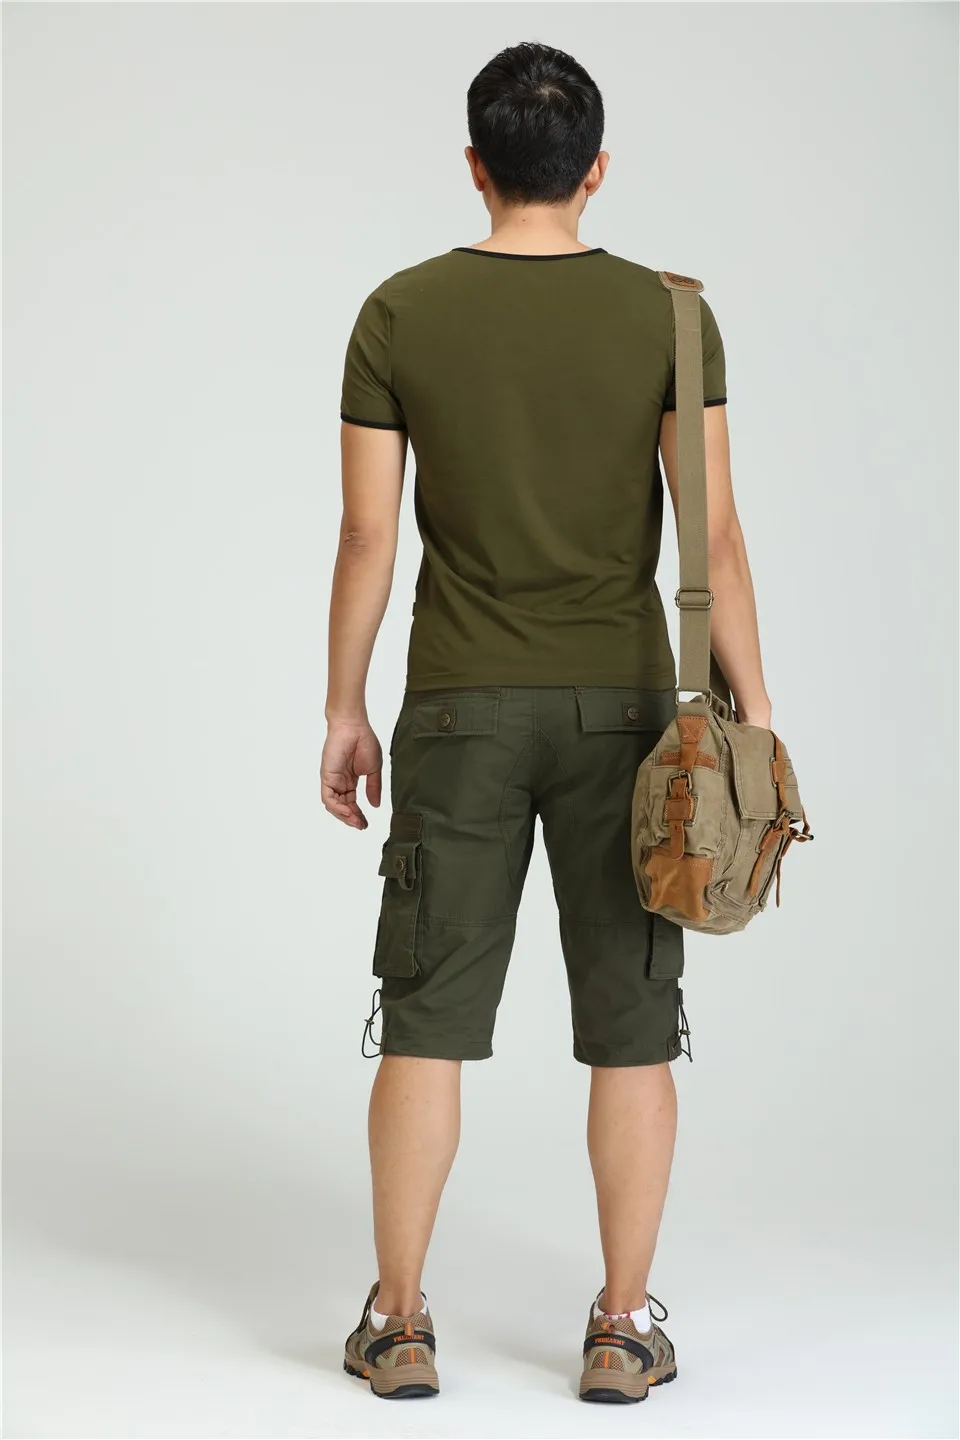 Брендовые новые мужские военные карго шорты, армейский зеленый цвет, большие карманы, украшения, мужские повседневные шорты, мужская одежда MK-7105A